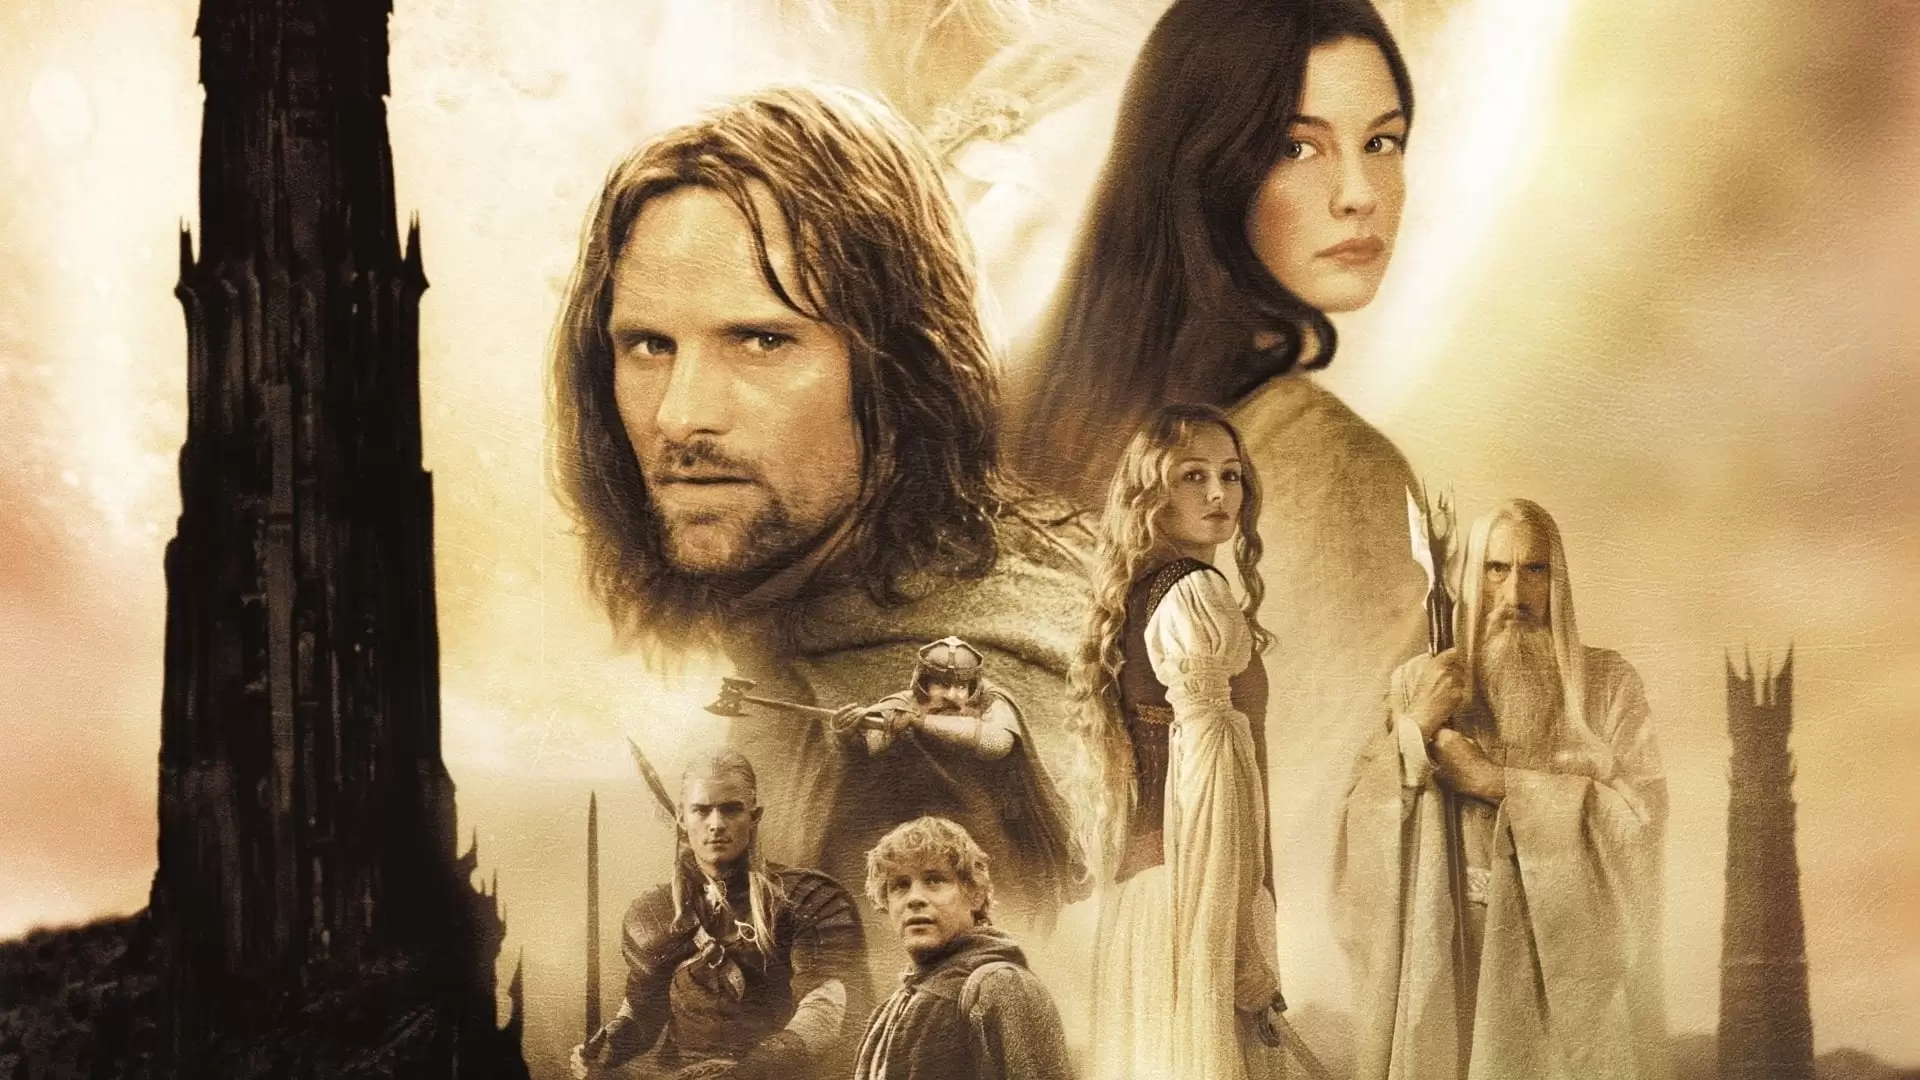 دانلود فیلم The Lord of the Rings: The Two Towers 2002 (ارباب حلقه ها ۲: دو برج) با زیرنویس فارسی و تماشای آنلاین